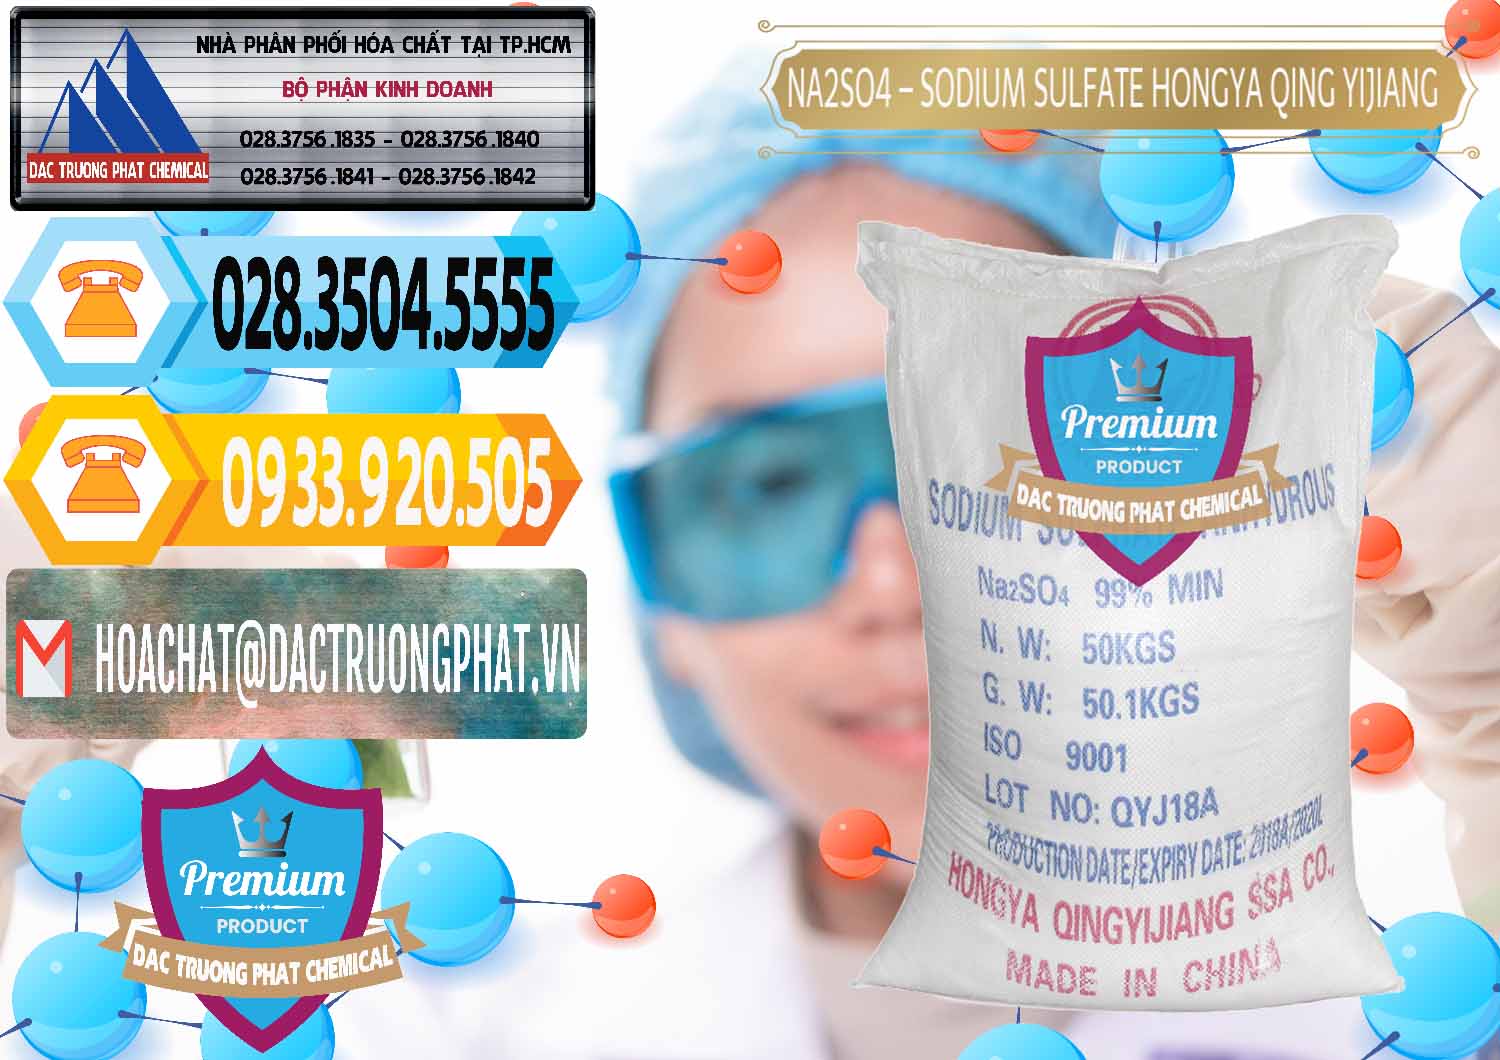 Bán ( cung cấp ) Sodium Sulphate - Muối Sunfat Na2SO4 Logo Cánh Bườm Hongya Qing Yi Trung Quốc China - 0098 - Đơn vị chuyên bán - phân phối hóa chất tại TP.HCM - hoachattayrua.net